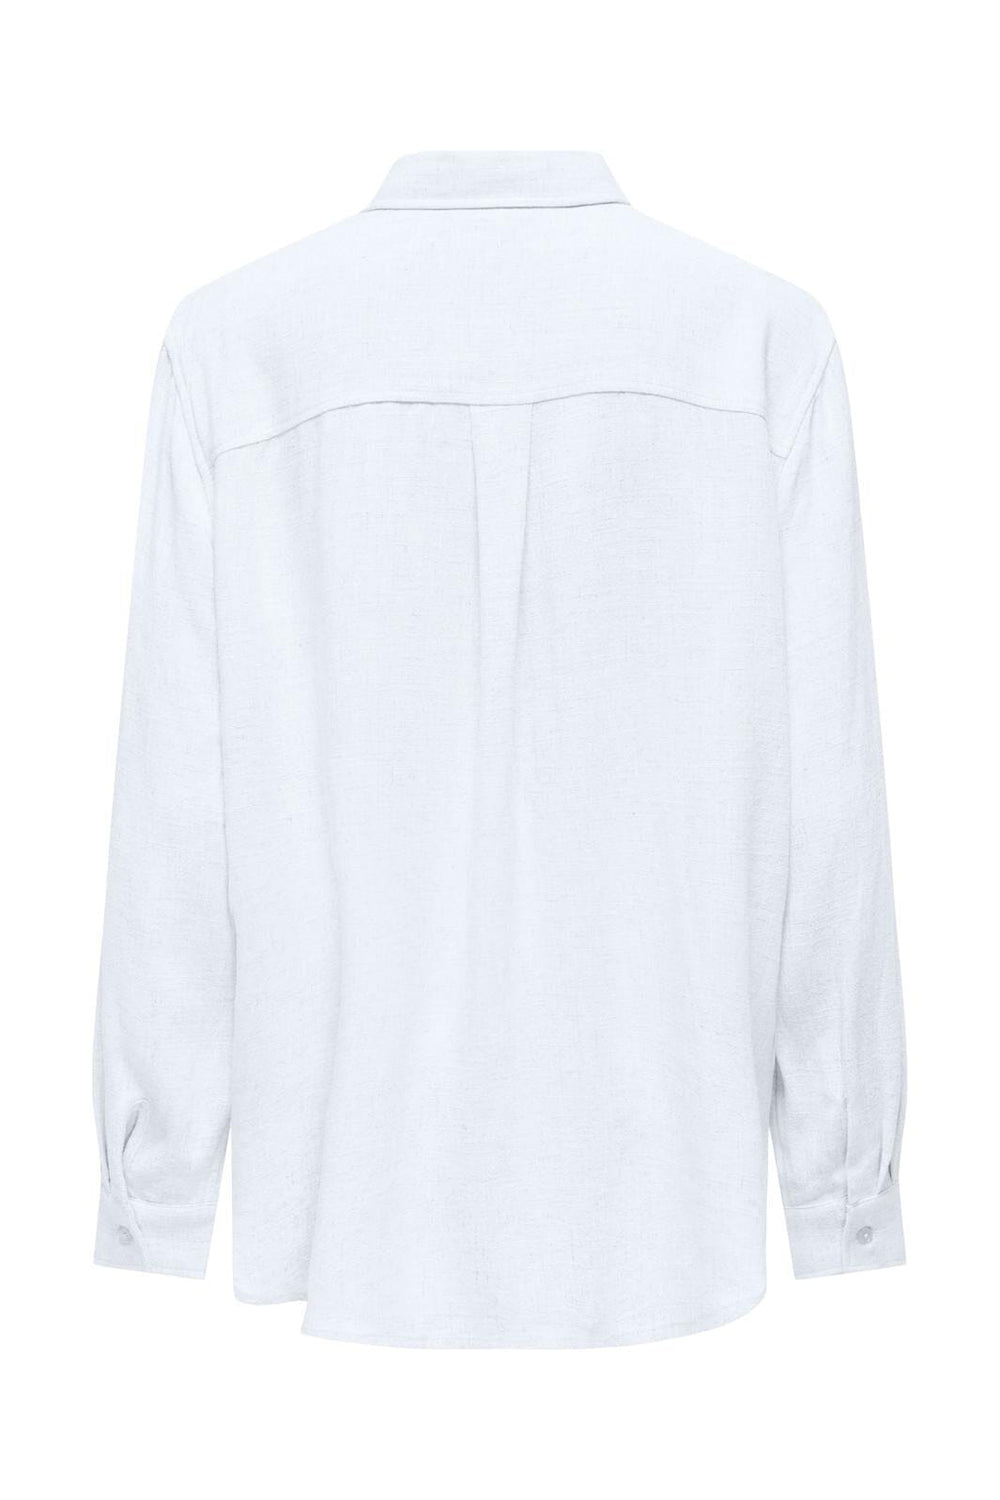 Only - Onlsiesta L/S Linen Bl Ovs Shirt - 4529241 Bright White